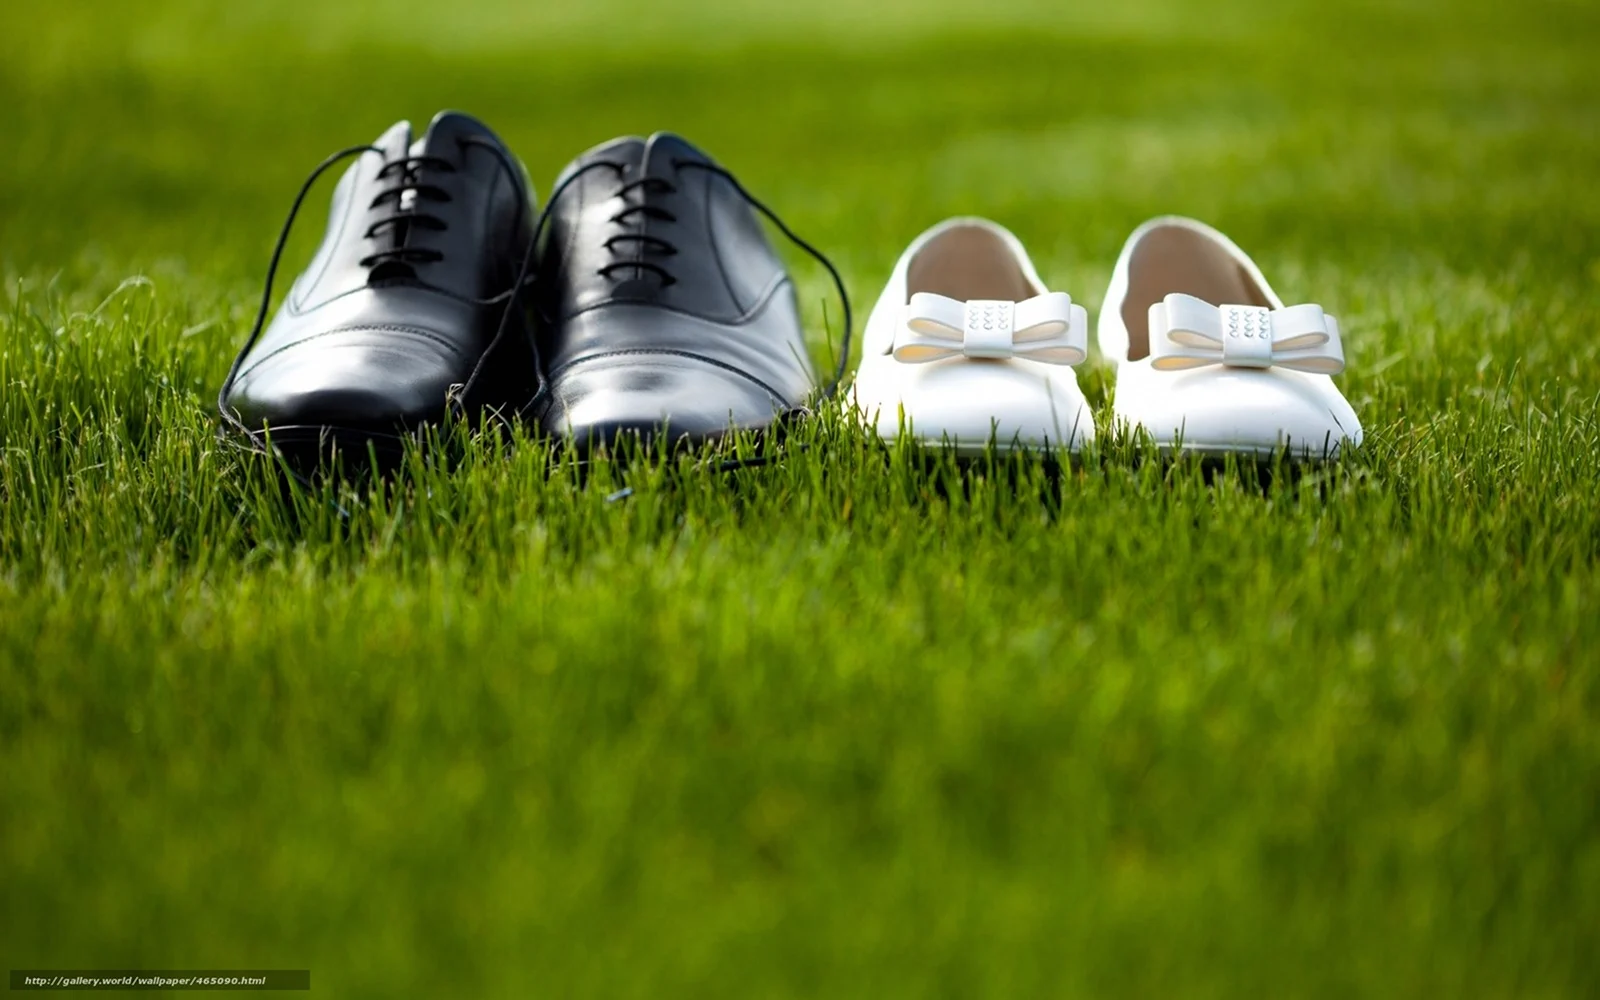 Обувь на траве